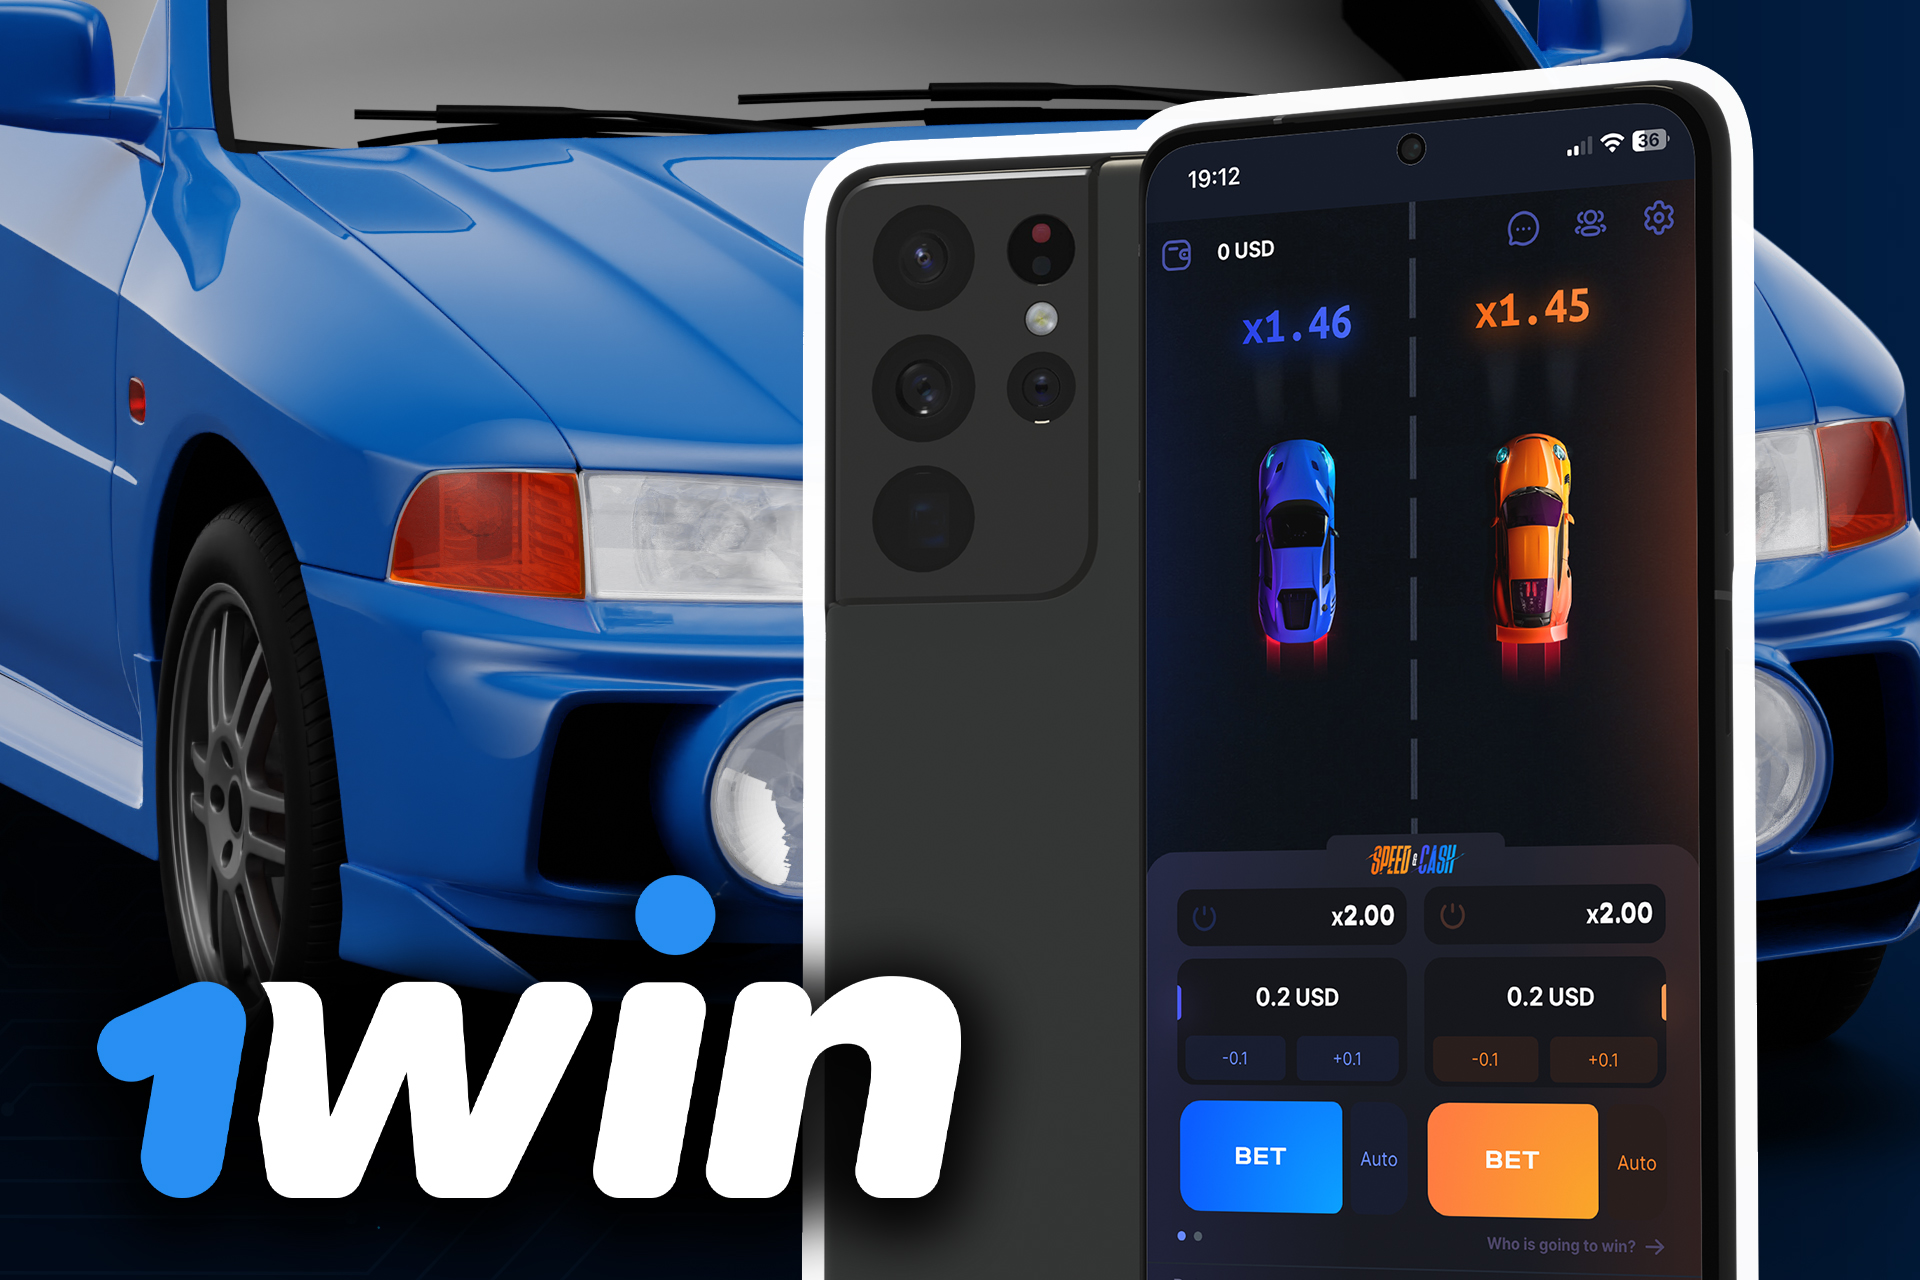 Abre la página oficial de 1win y descarga el juego Speed and Cash en tu smartphone.